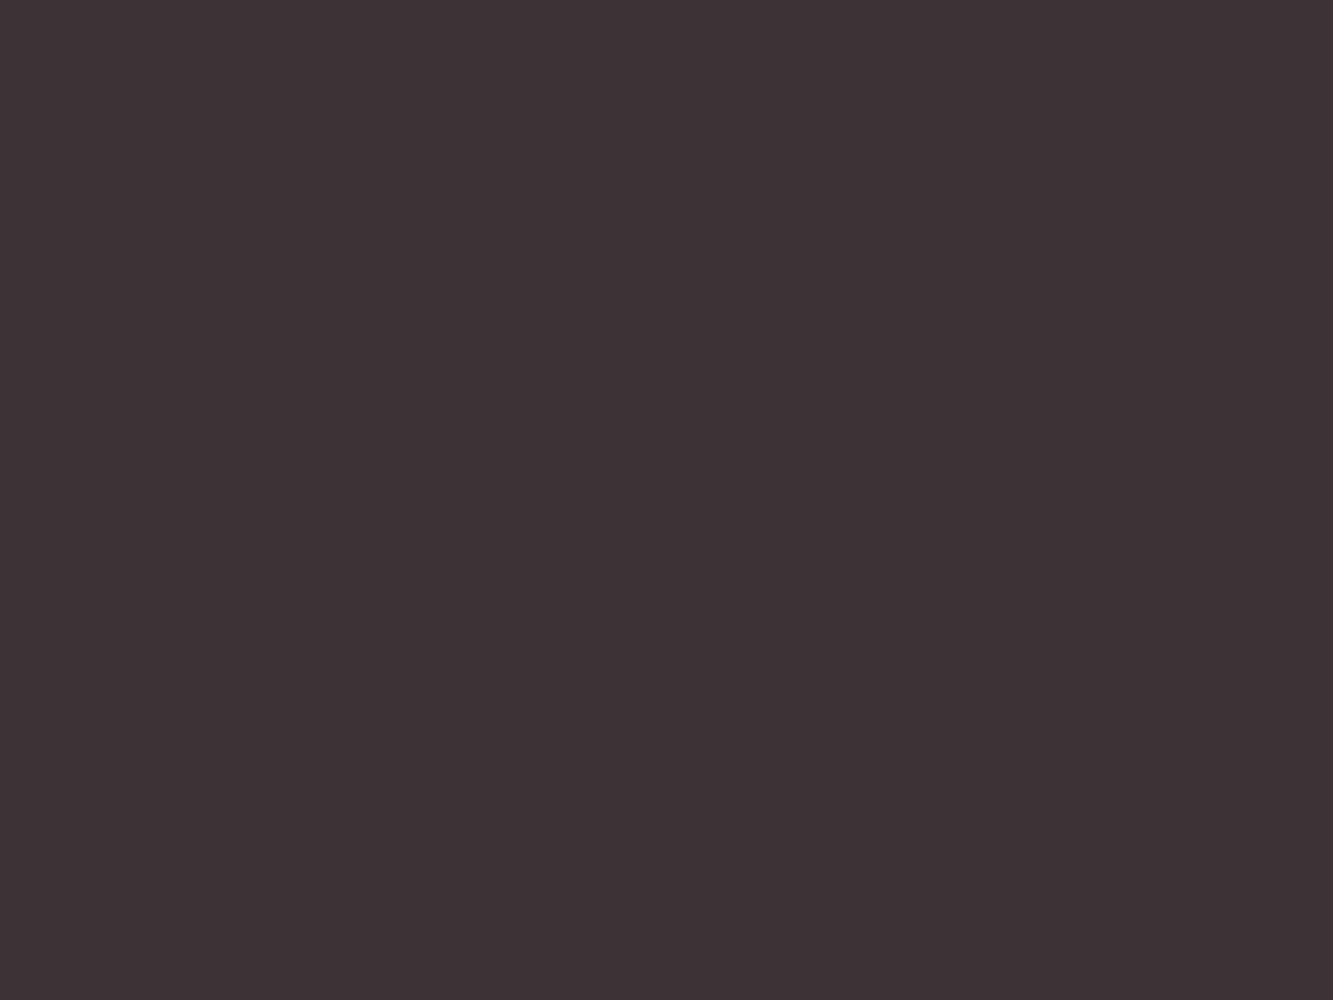 Концерт рок-группы «Парк Горького» в честь 25-летия коллектива в «Крокус Сити Холле», Москва. 2012 год. Фотография: Сергей Карпов / ТАСС